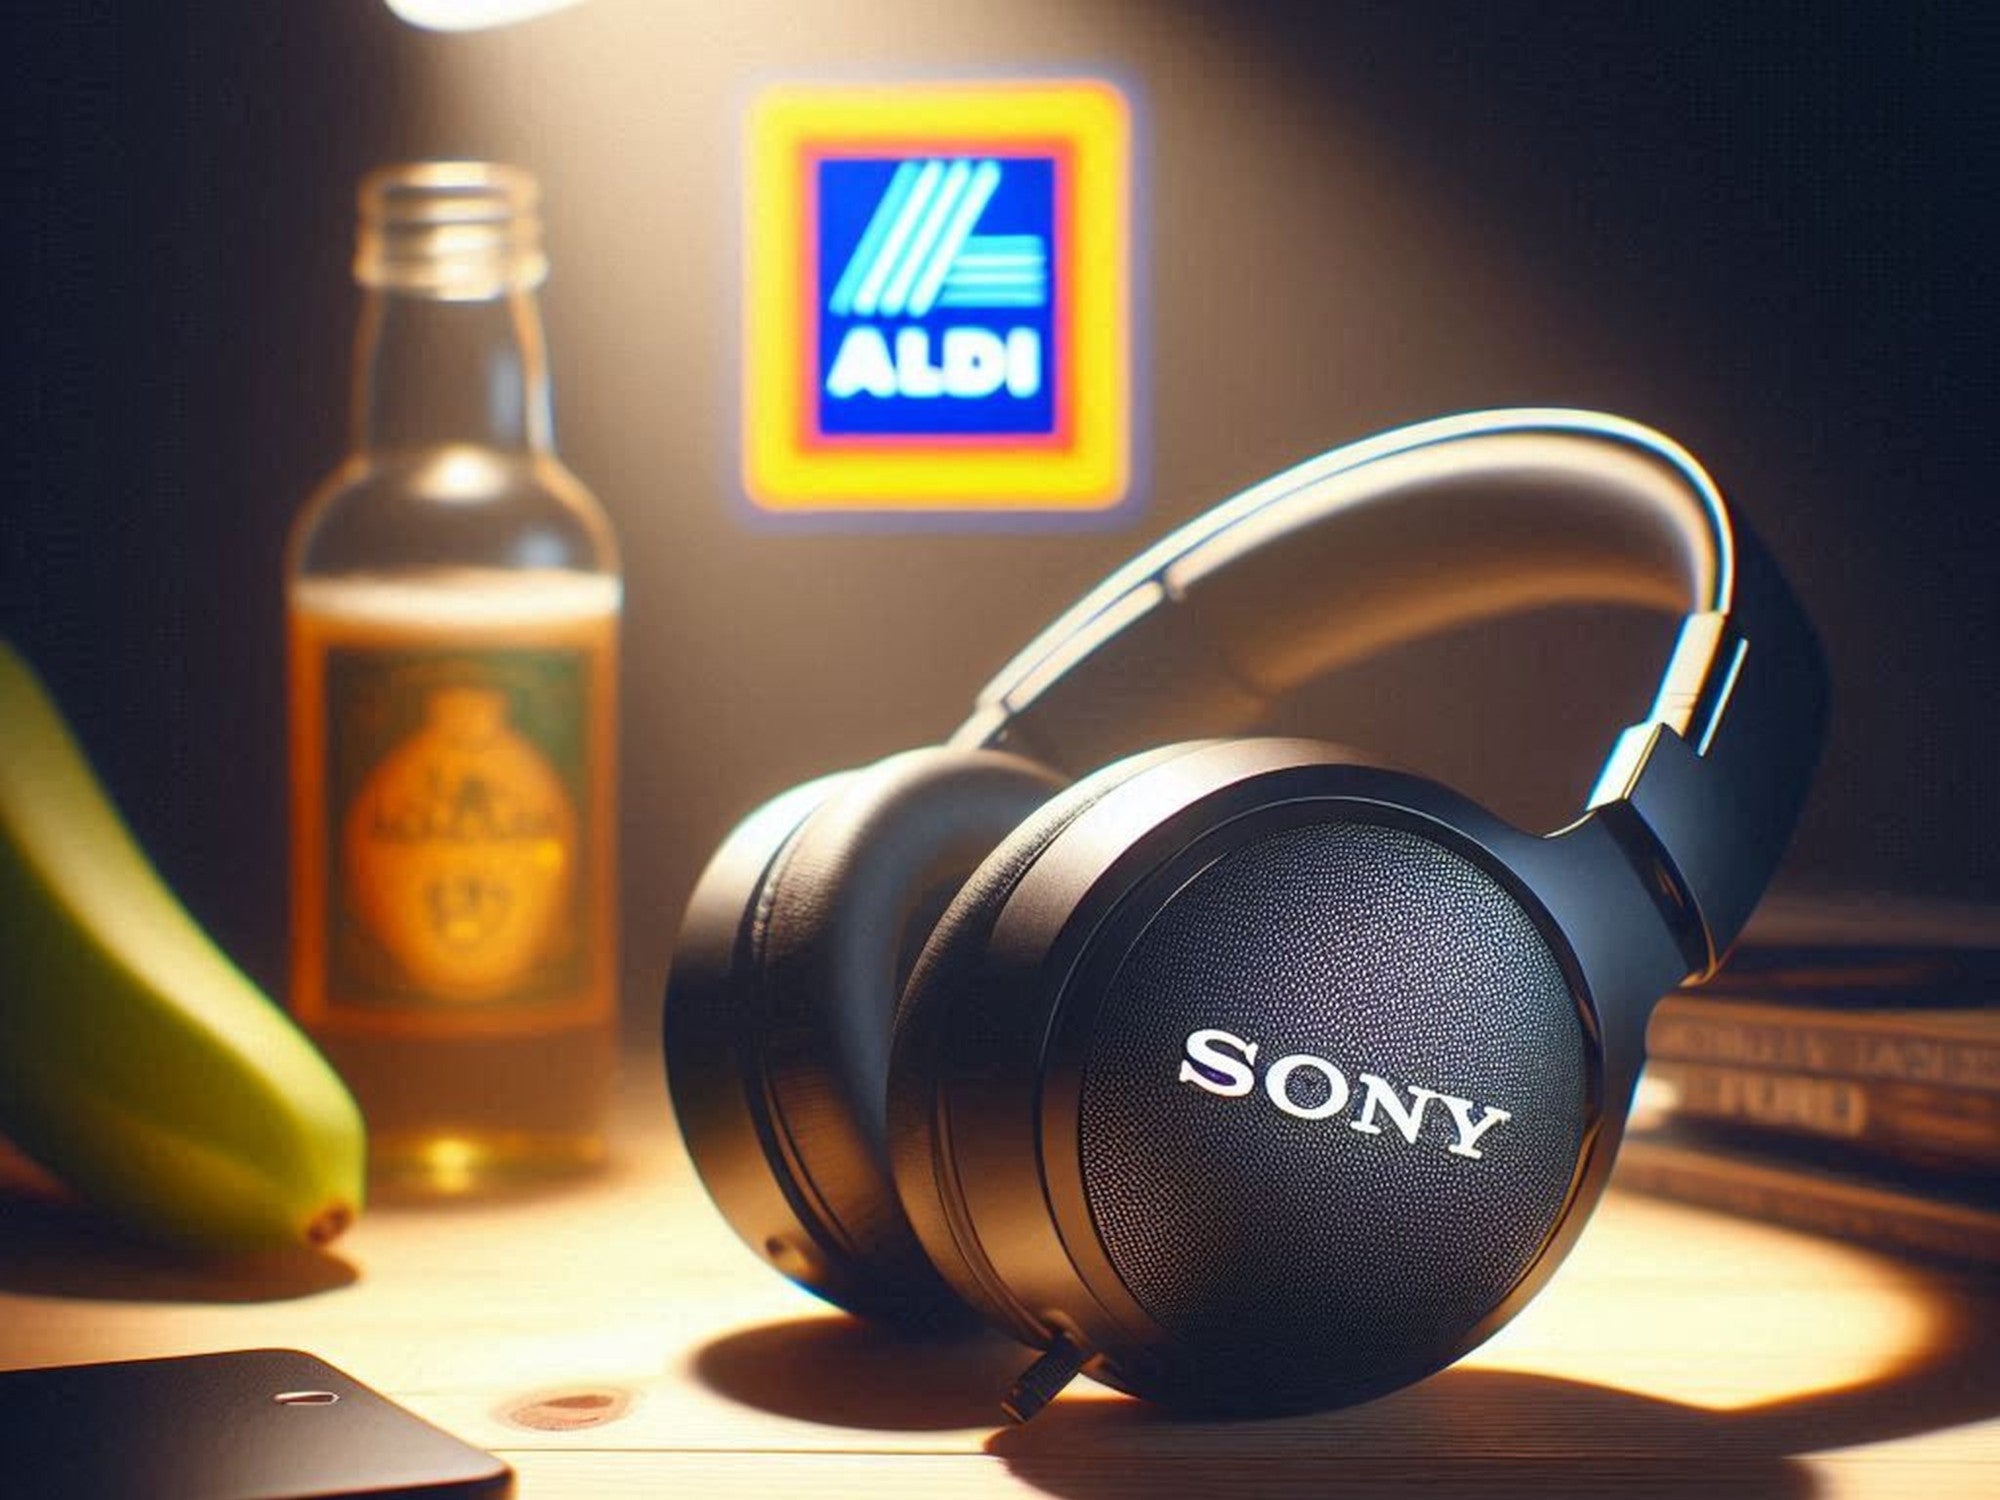 Kopfhörer von Sony vor einem Aldi-Logo.